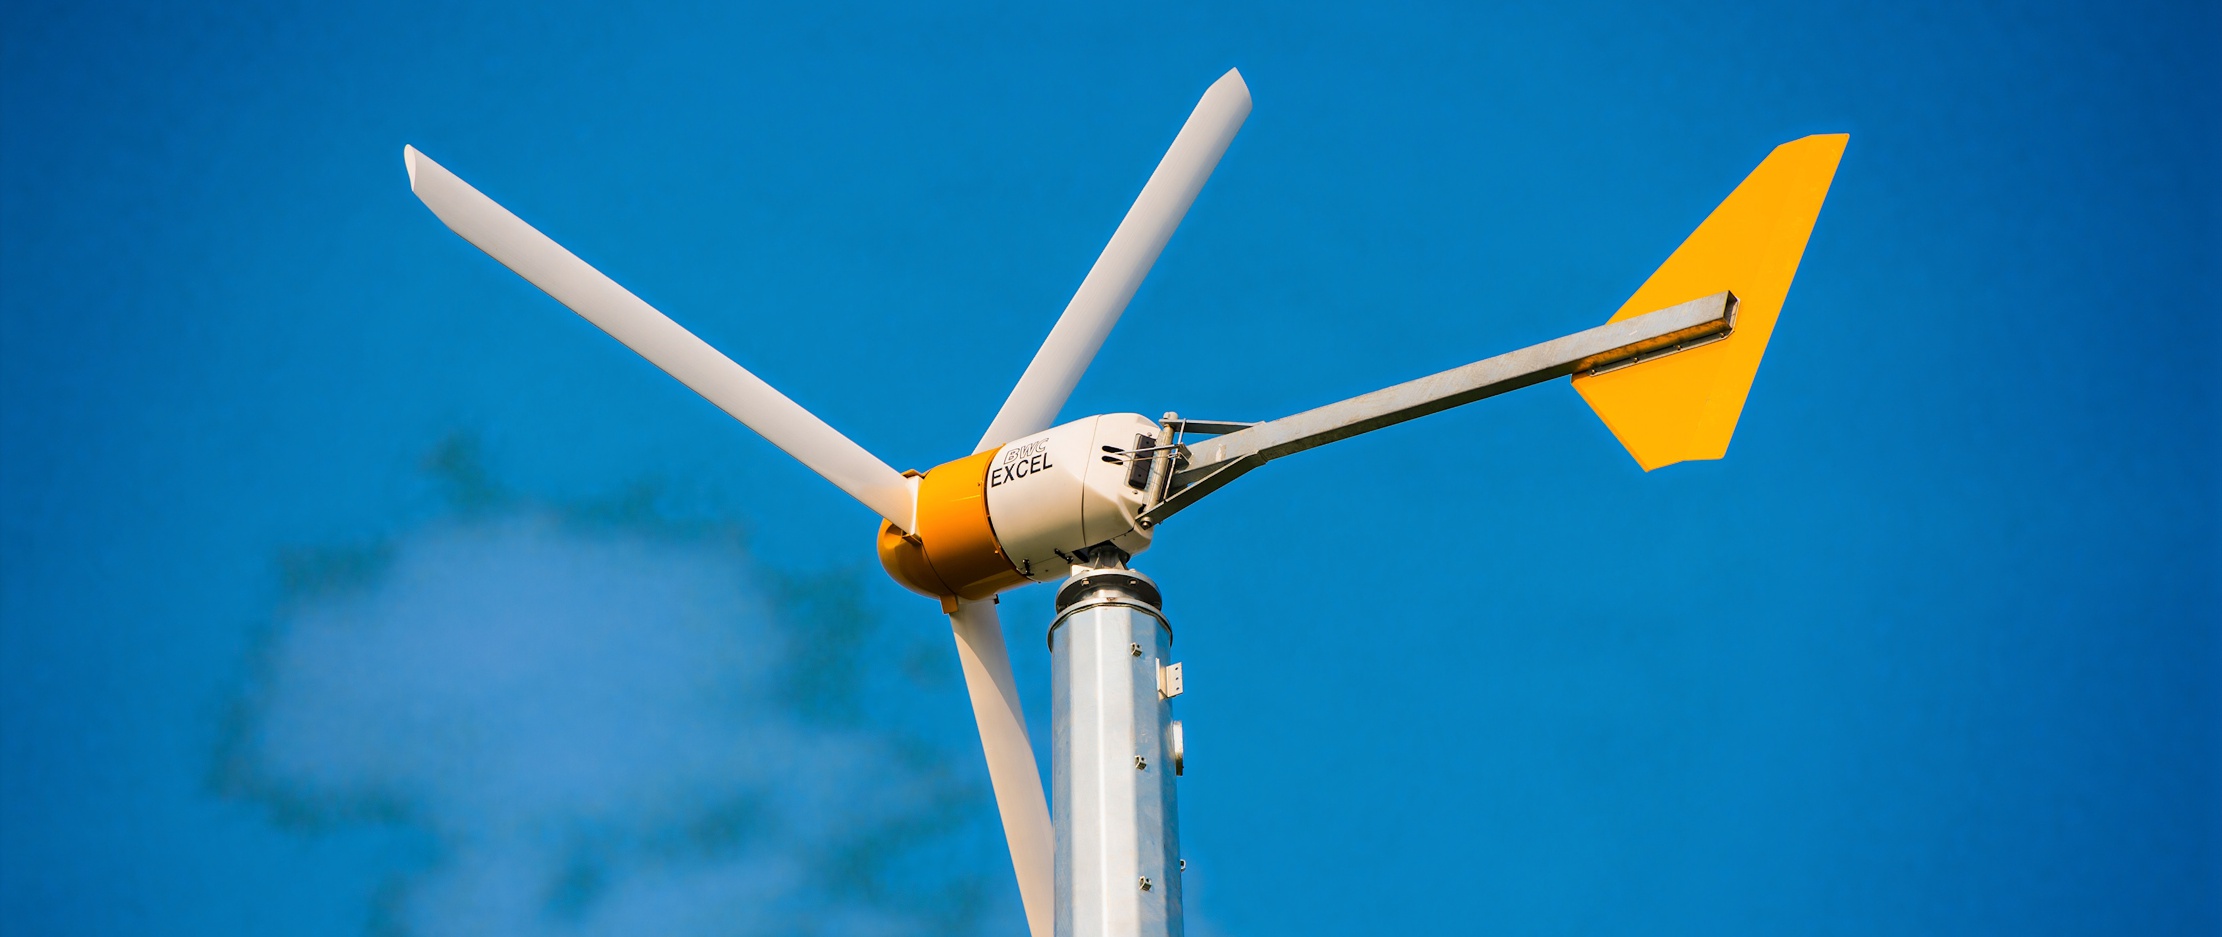 Quelle est la capacité de production d'une éolienne domestique